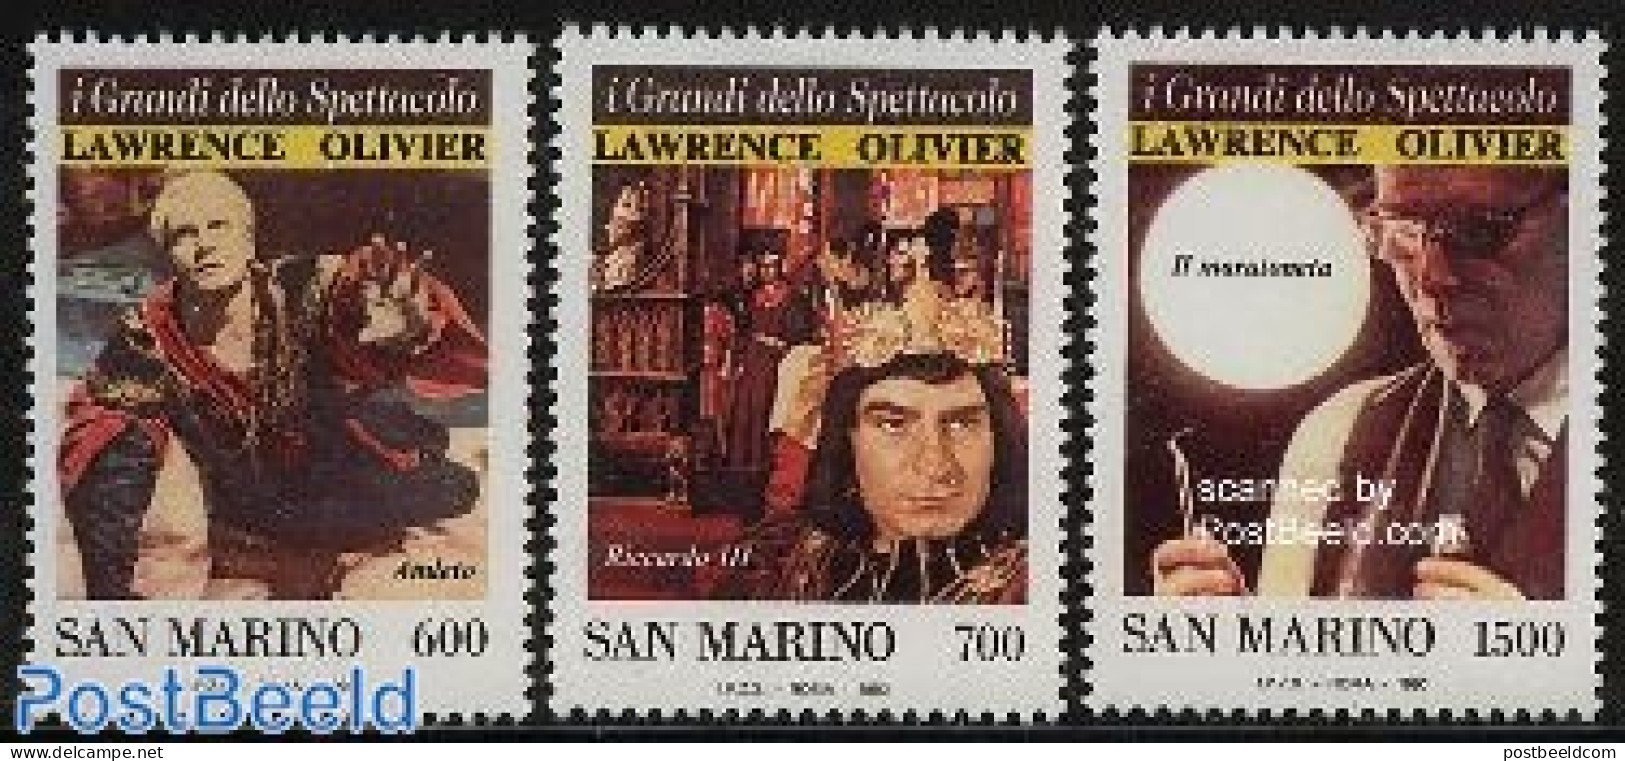 San Marino 1990 I Grandi Della Spettacolo 3v, Mint NH, Performance Art - Theatre - Unused Stamps